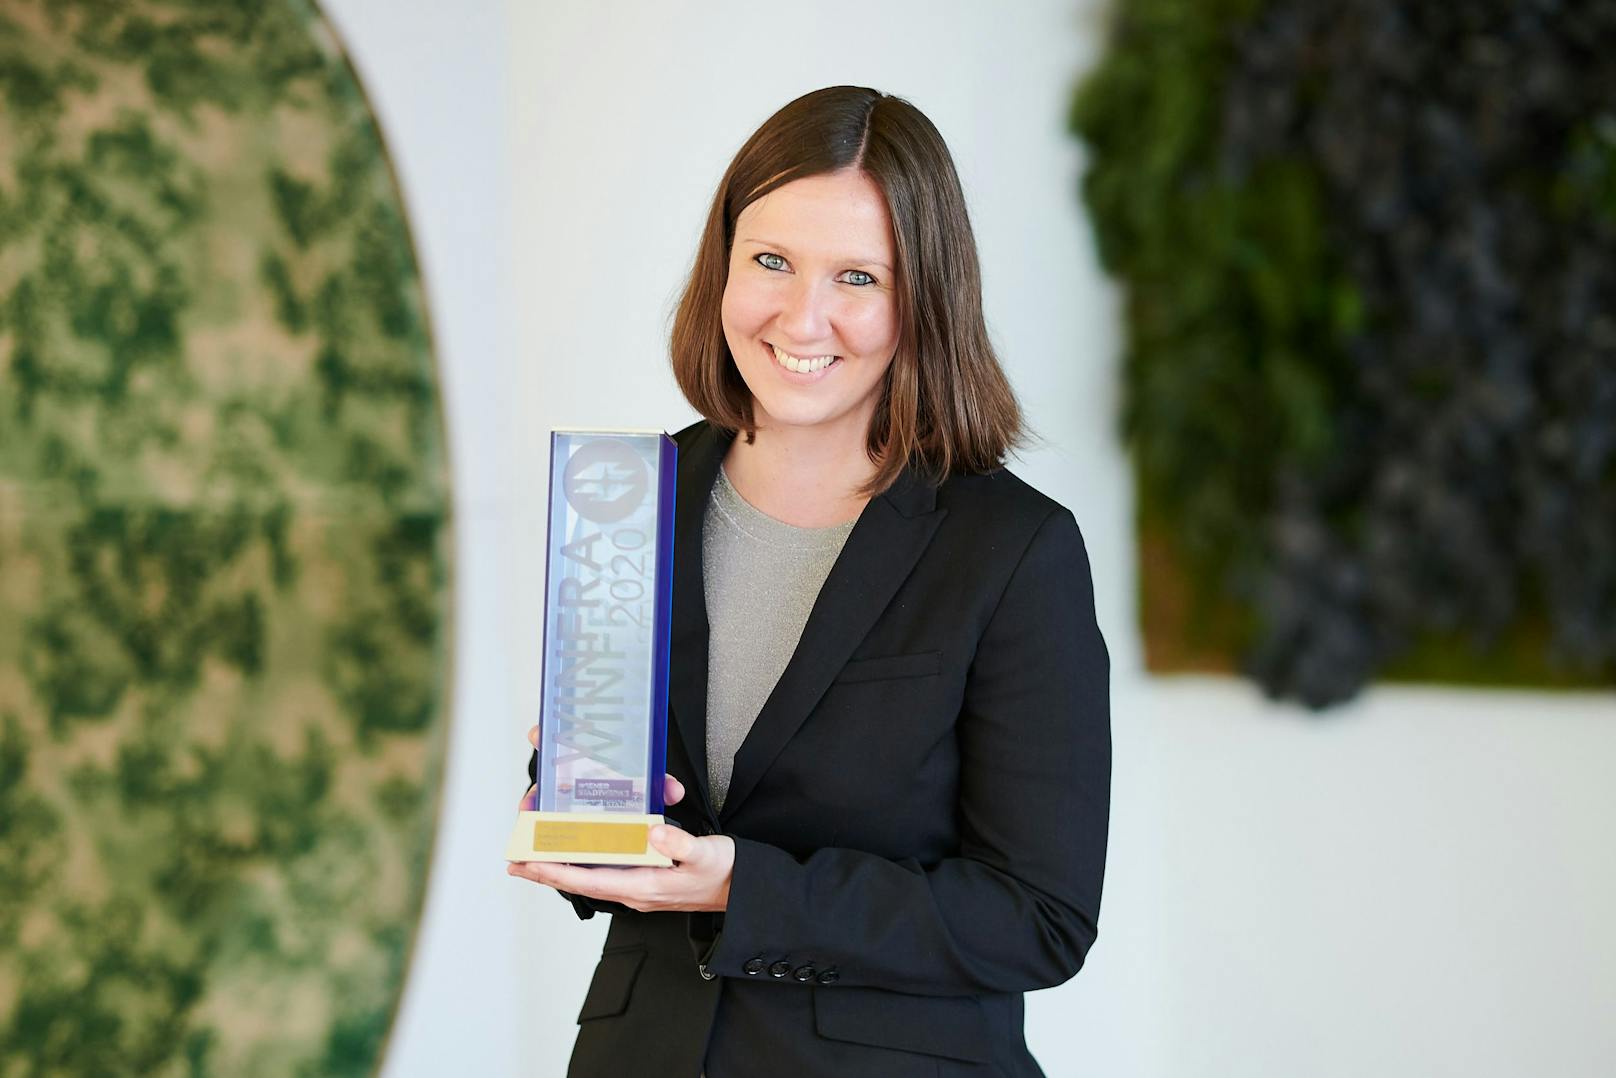 Stefanie Riegler gewann den WINFRA-Preis in der Kategorie "Online".